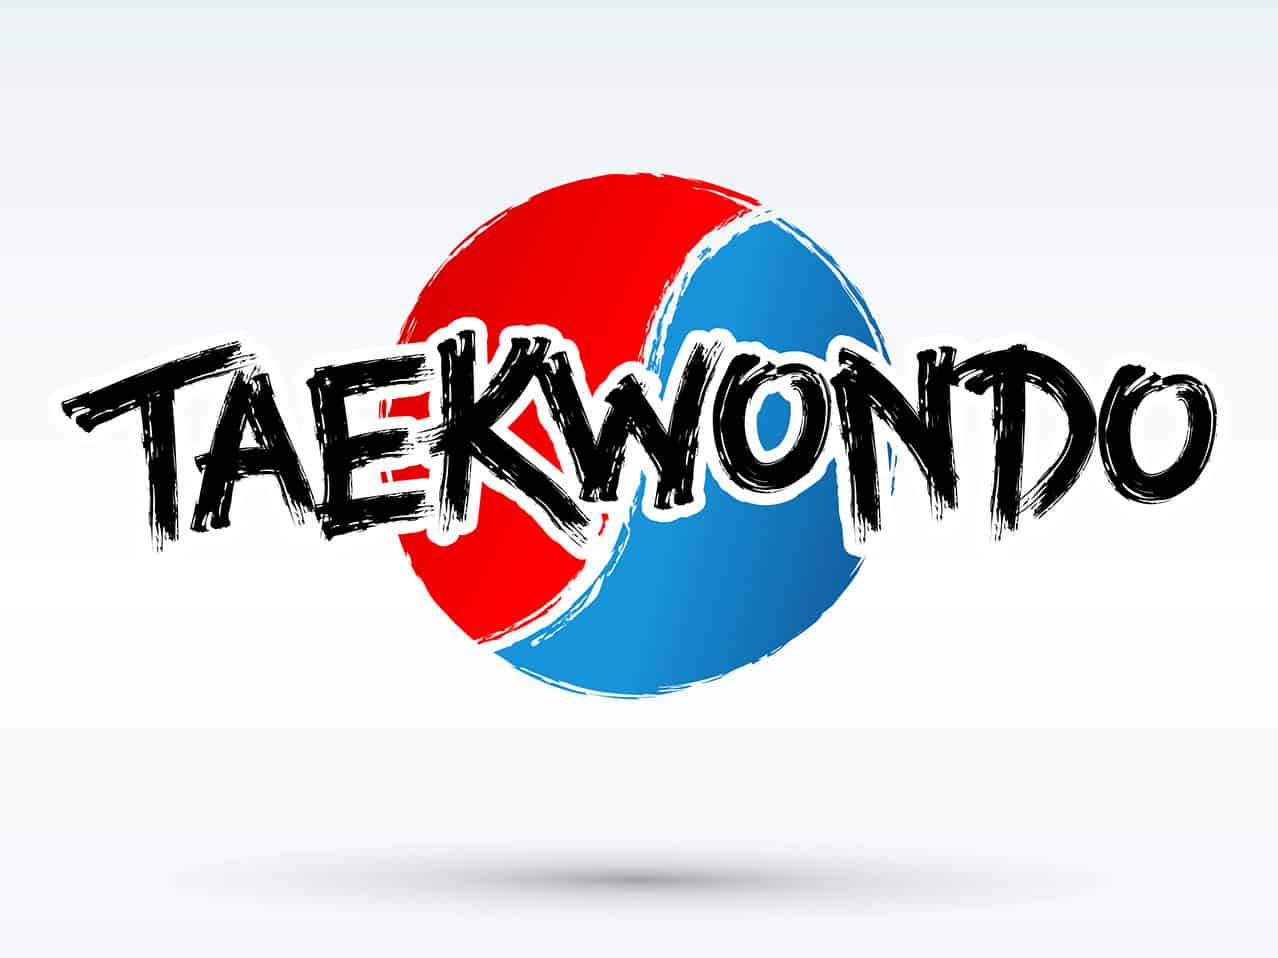 What is Taekwondo